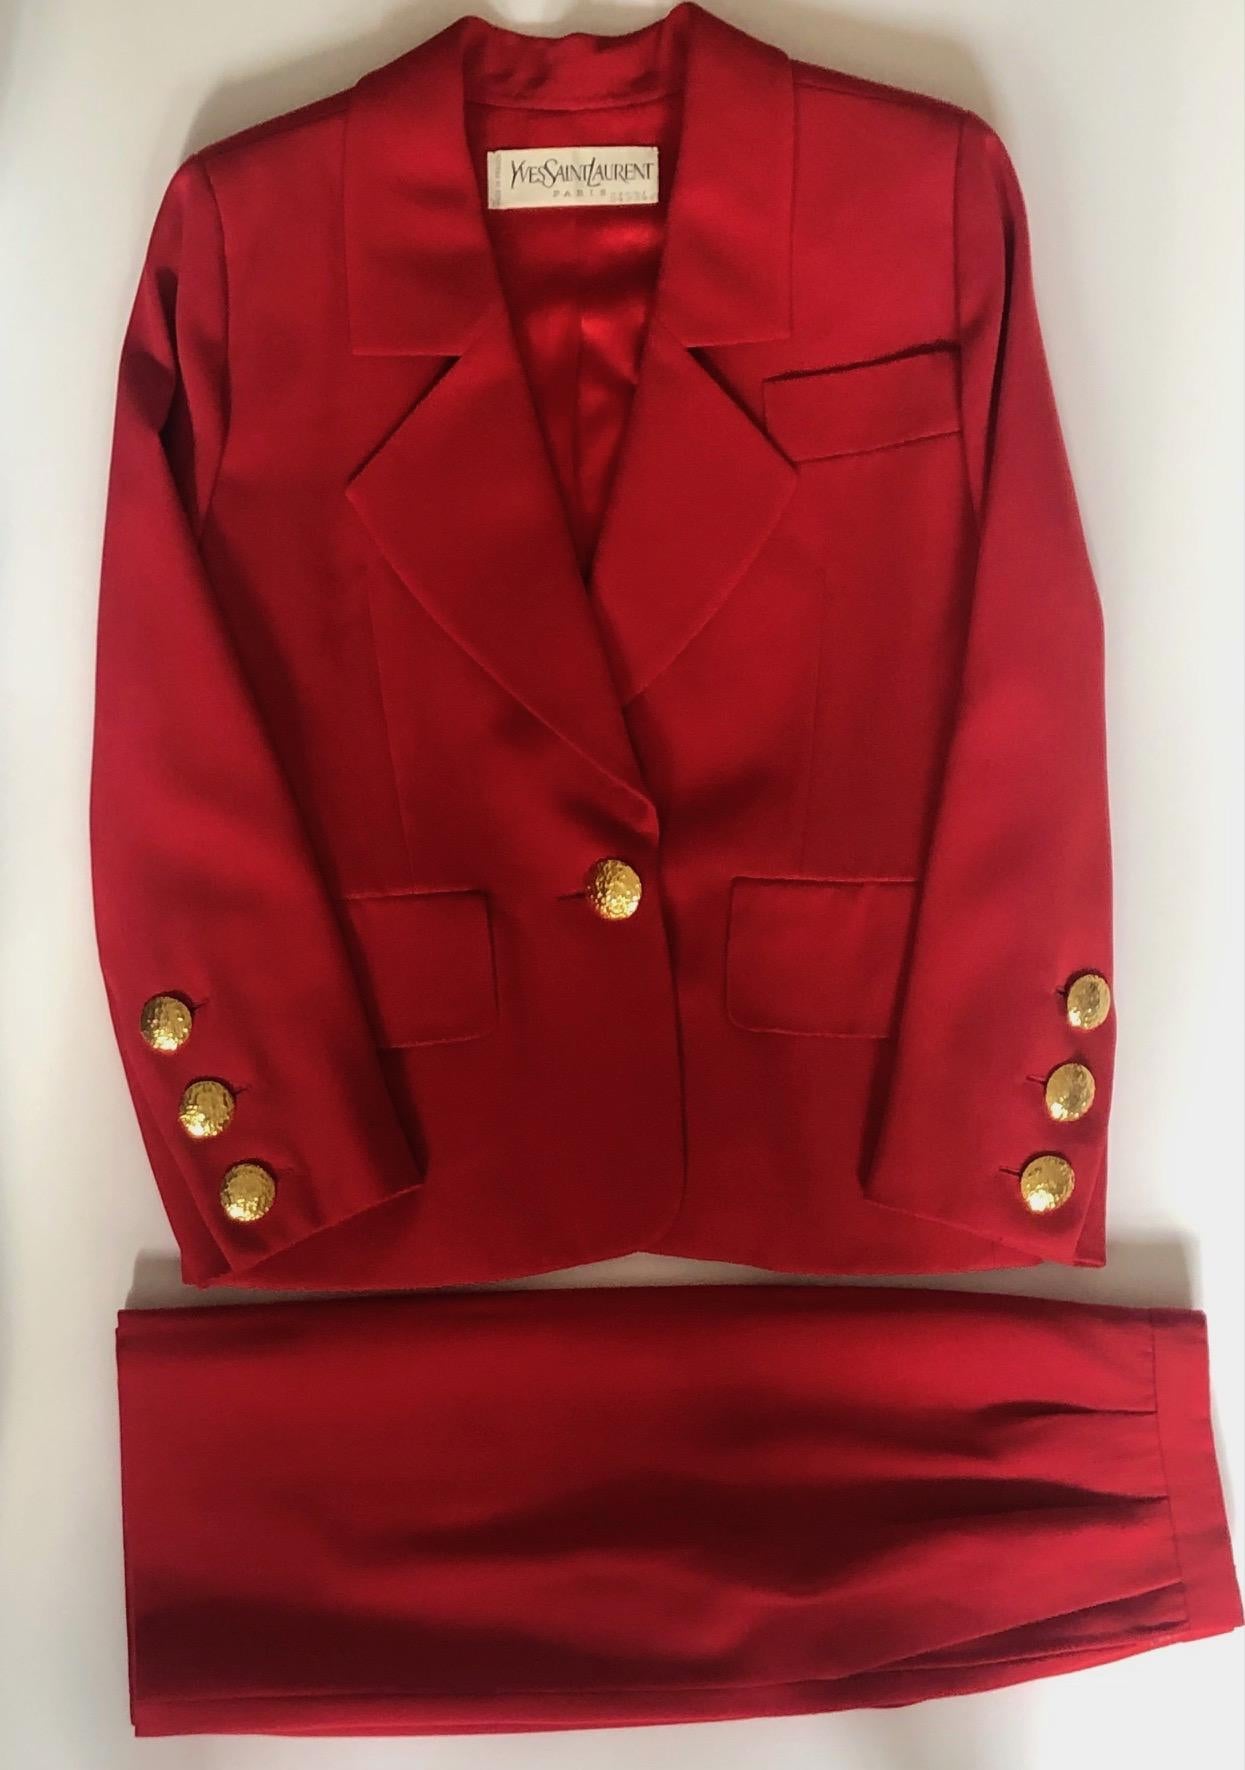 YVES SAINT-LAURENT Haute Couture 64534 Rote einreihige Jacke Anzug Vintage
Yves Saint-Laurent Haute Couture Nr.64534 CIRCA 1988-1990. Ein klassisch schicker, roter Wolljacken-Blazer-Anzug. Gefütterte Jacke mit gekerbtem Schalkragen, einreihig mit